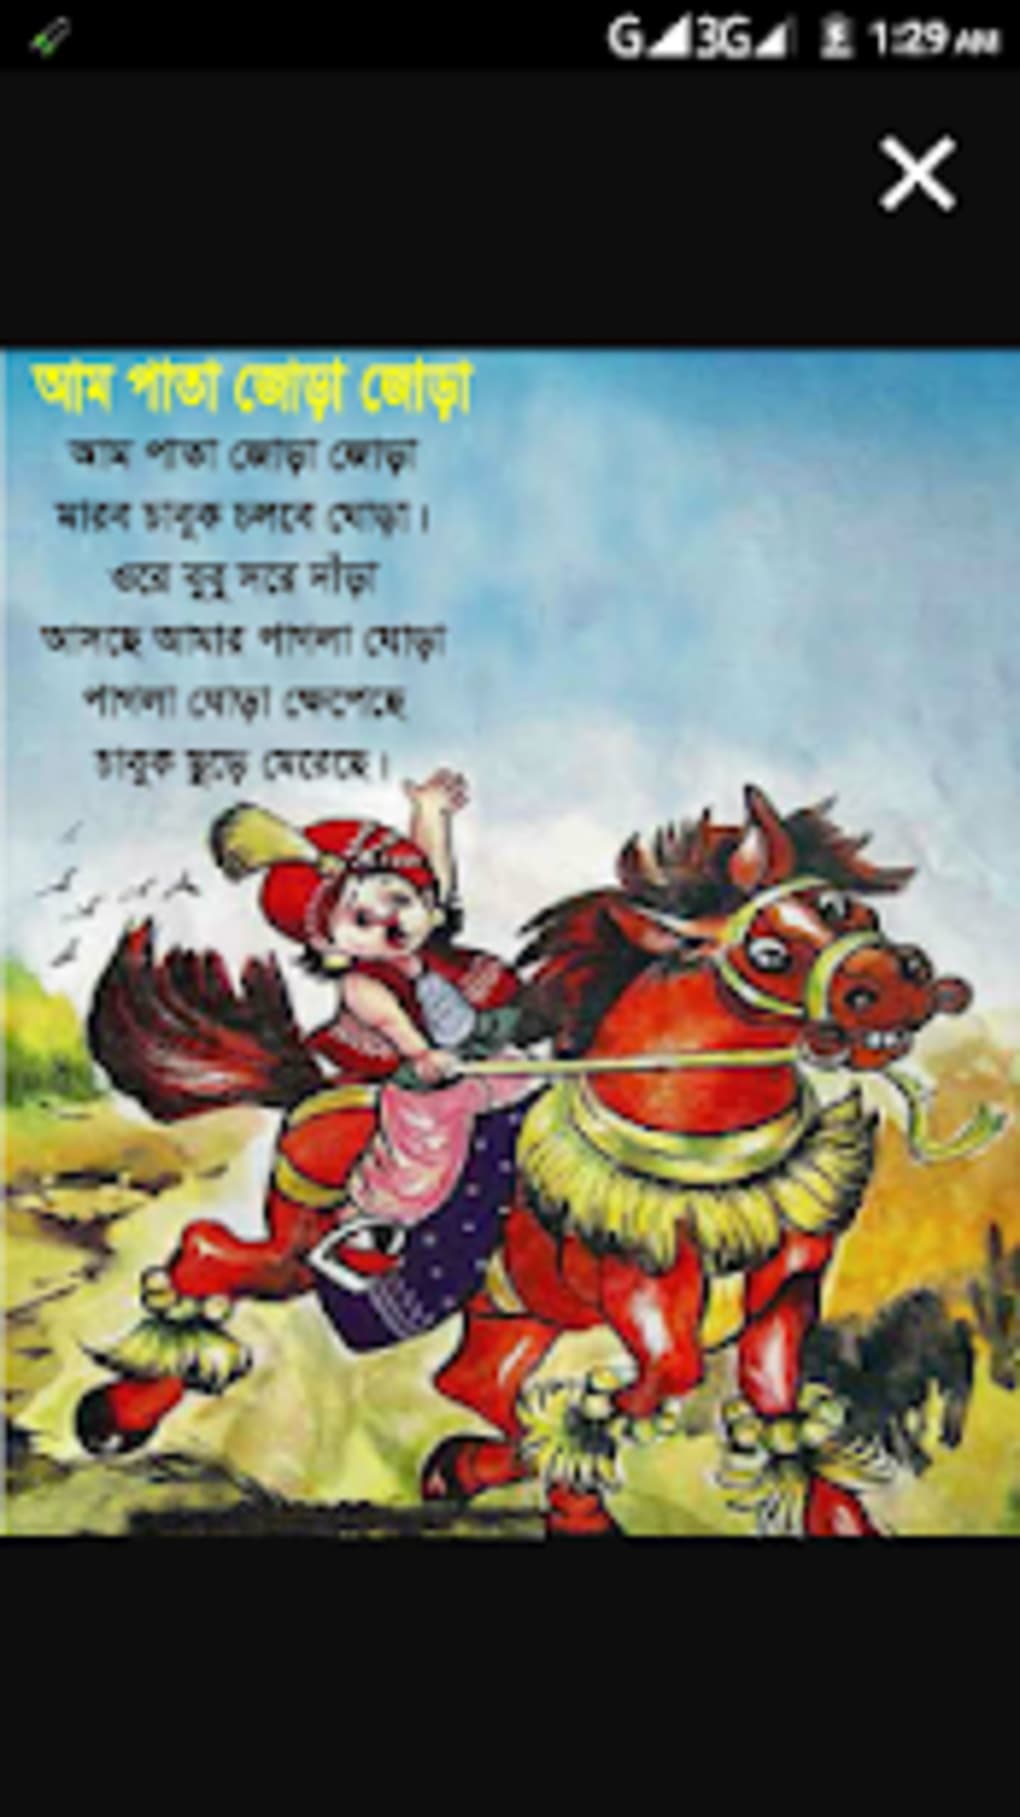 ছটদর বল ছড় অডও -Chotoder Bangla Chora Audio APK for Android - Download